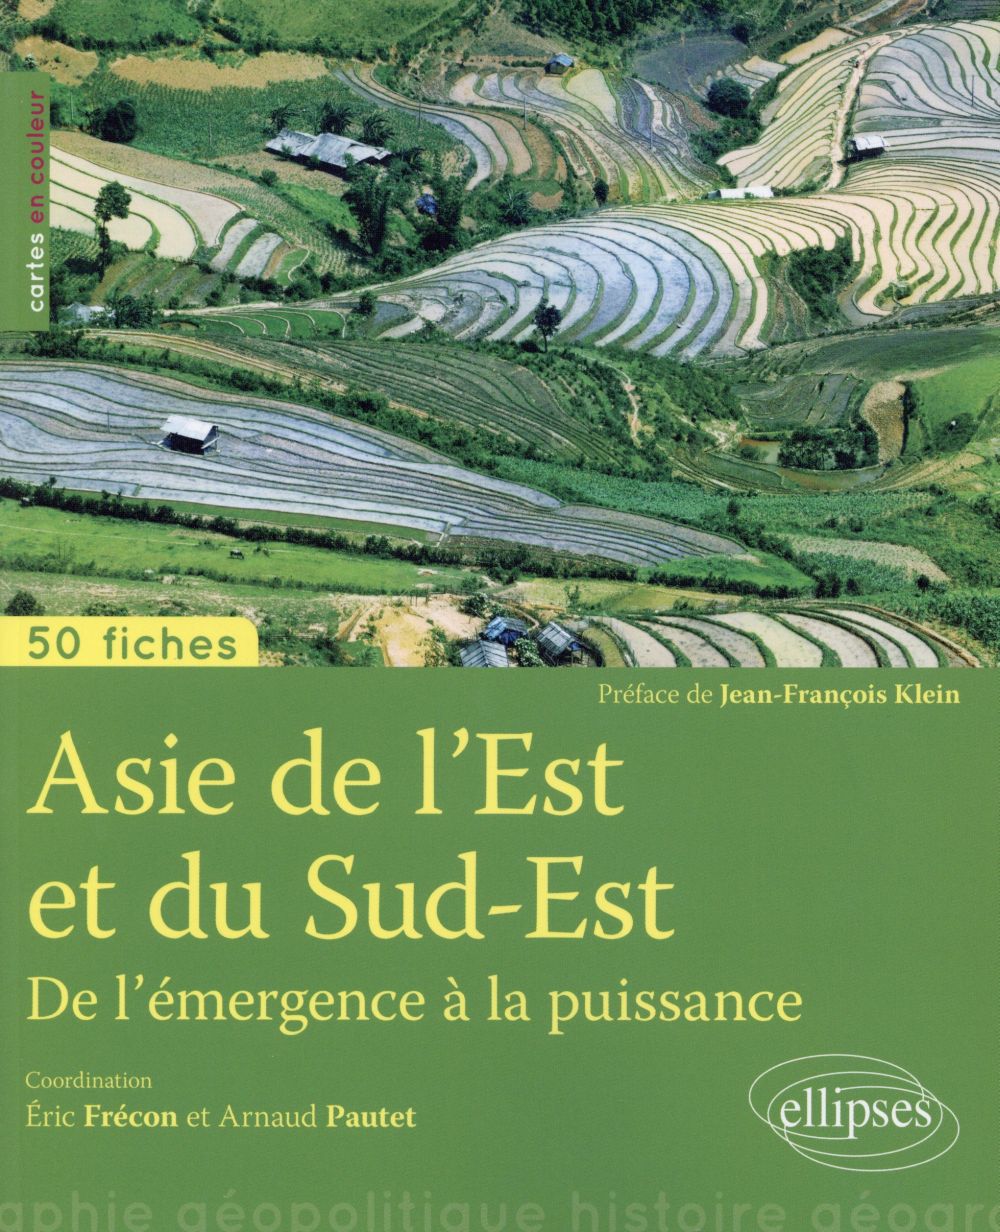 ASIE DU SUD-EST  DE L'EMERGENCE A LA PUISSANCE